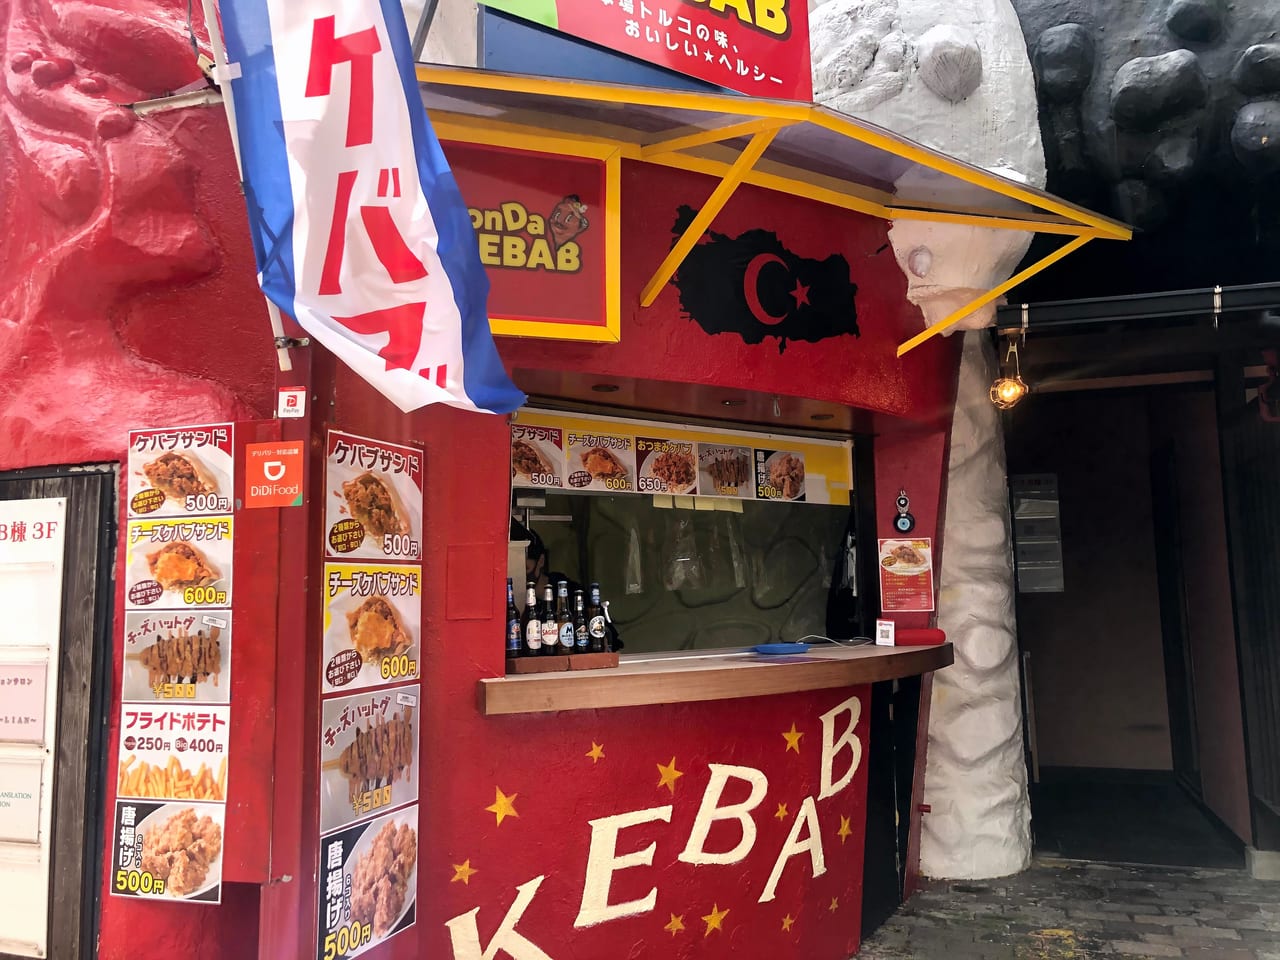 久留米市 ボリューム満点 東町にオープンした Donda Kebabu でケバブをテイクアウトしてみました 号外net 久留米市 筑後北部